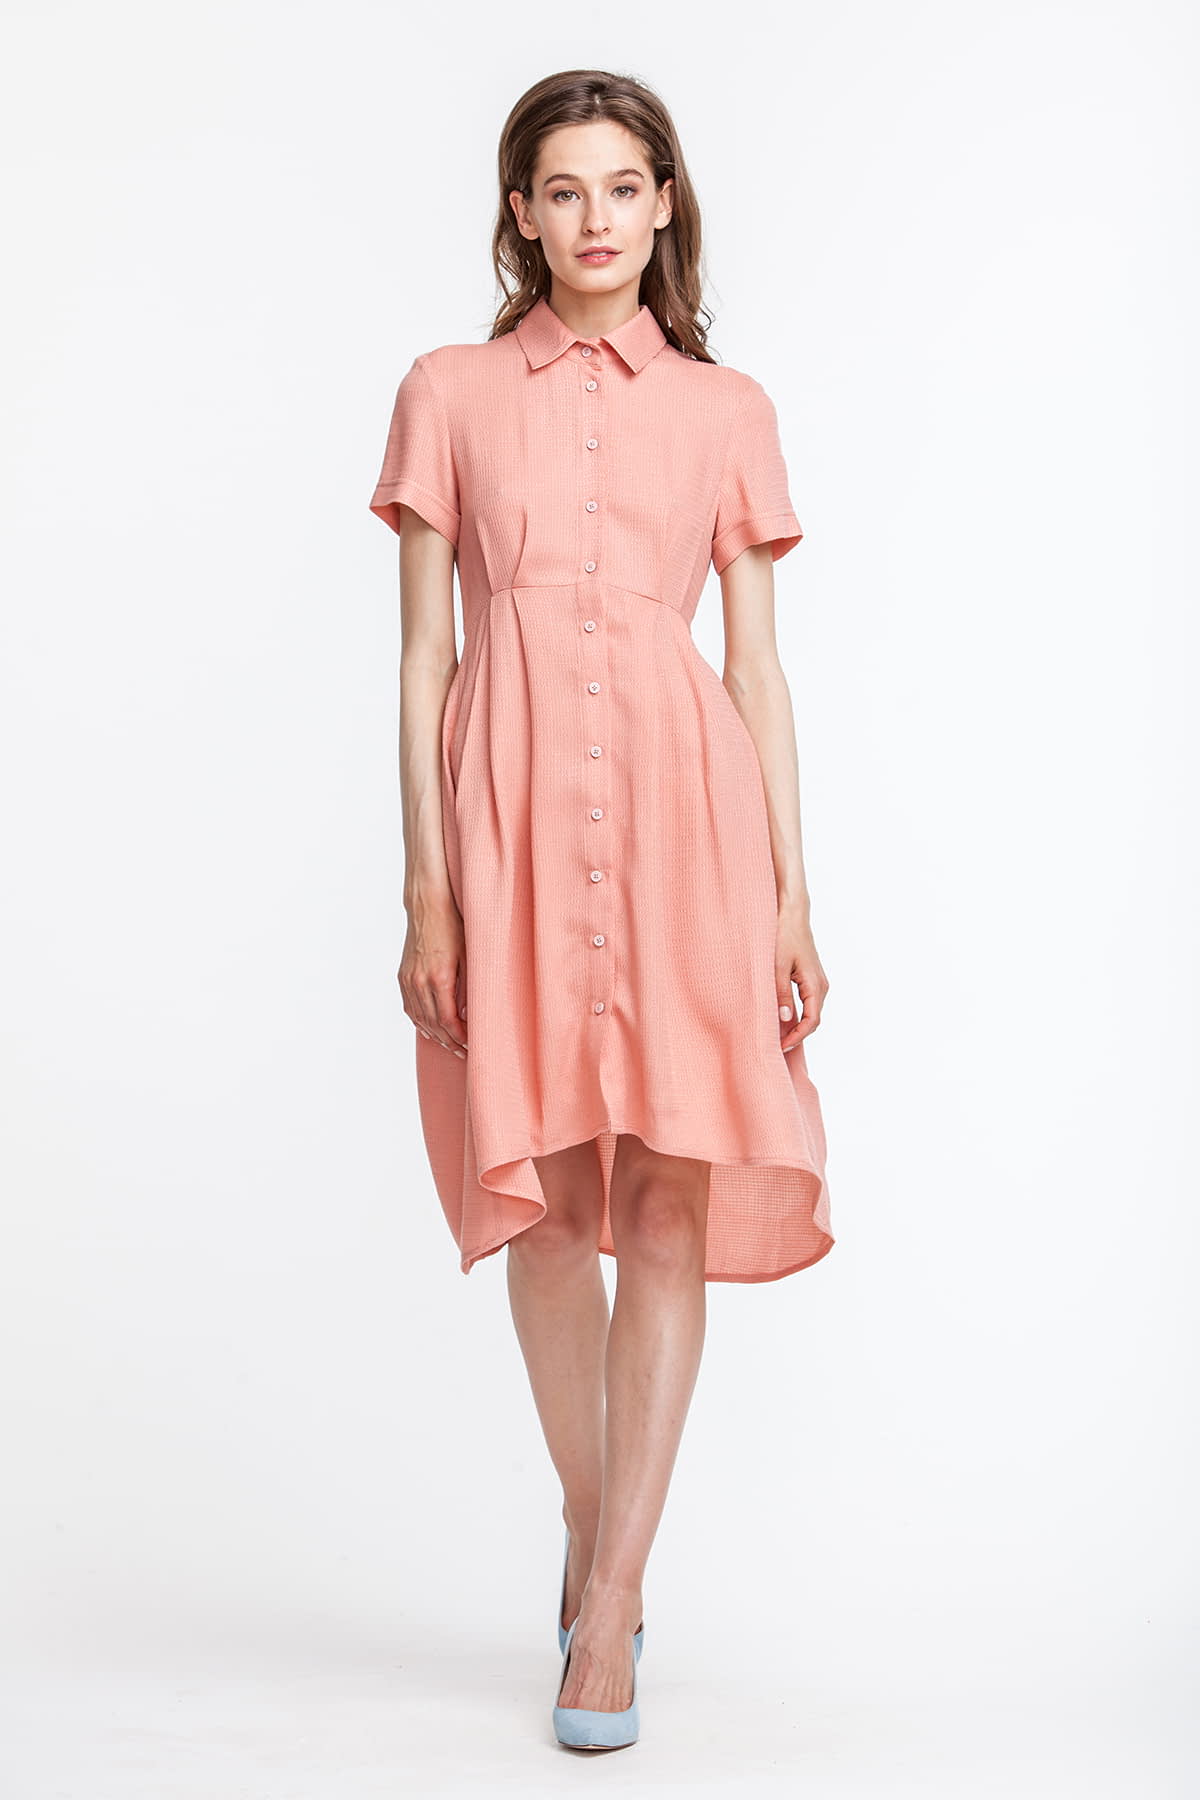 Платье персикового цвета, с рубашечным верхом, photo 2